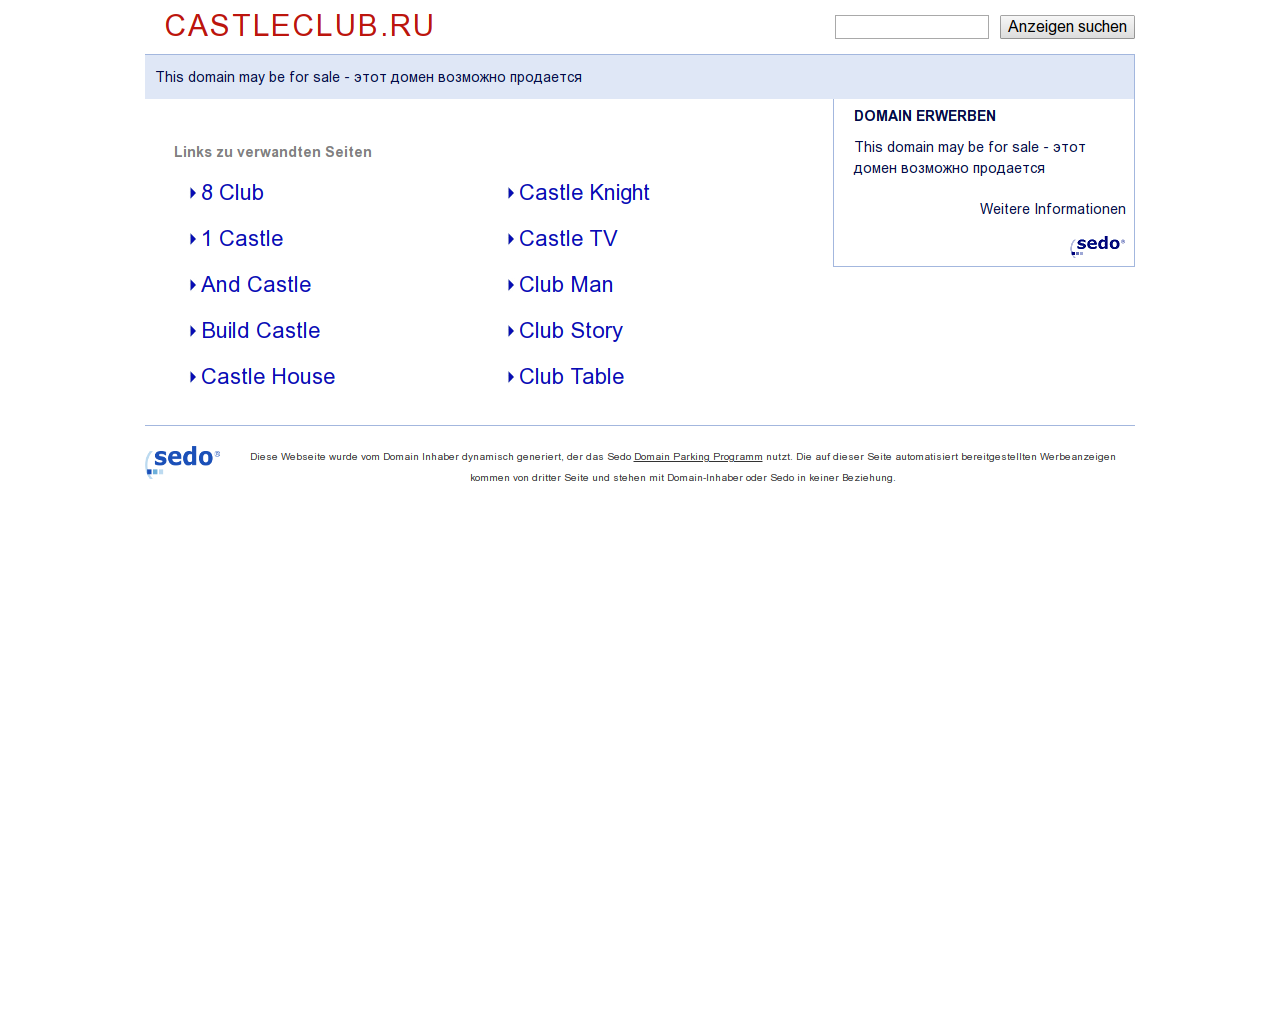 Изображение сайта castleclub.ru в разрешении 1280x1024